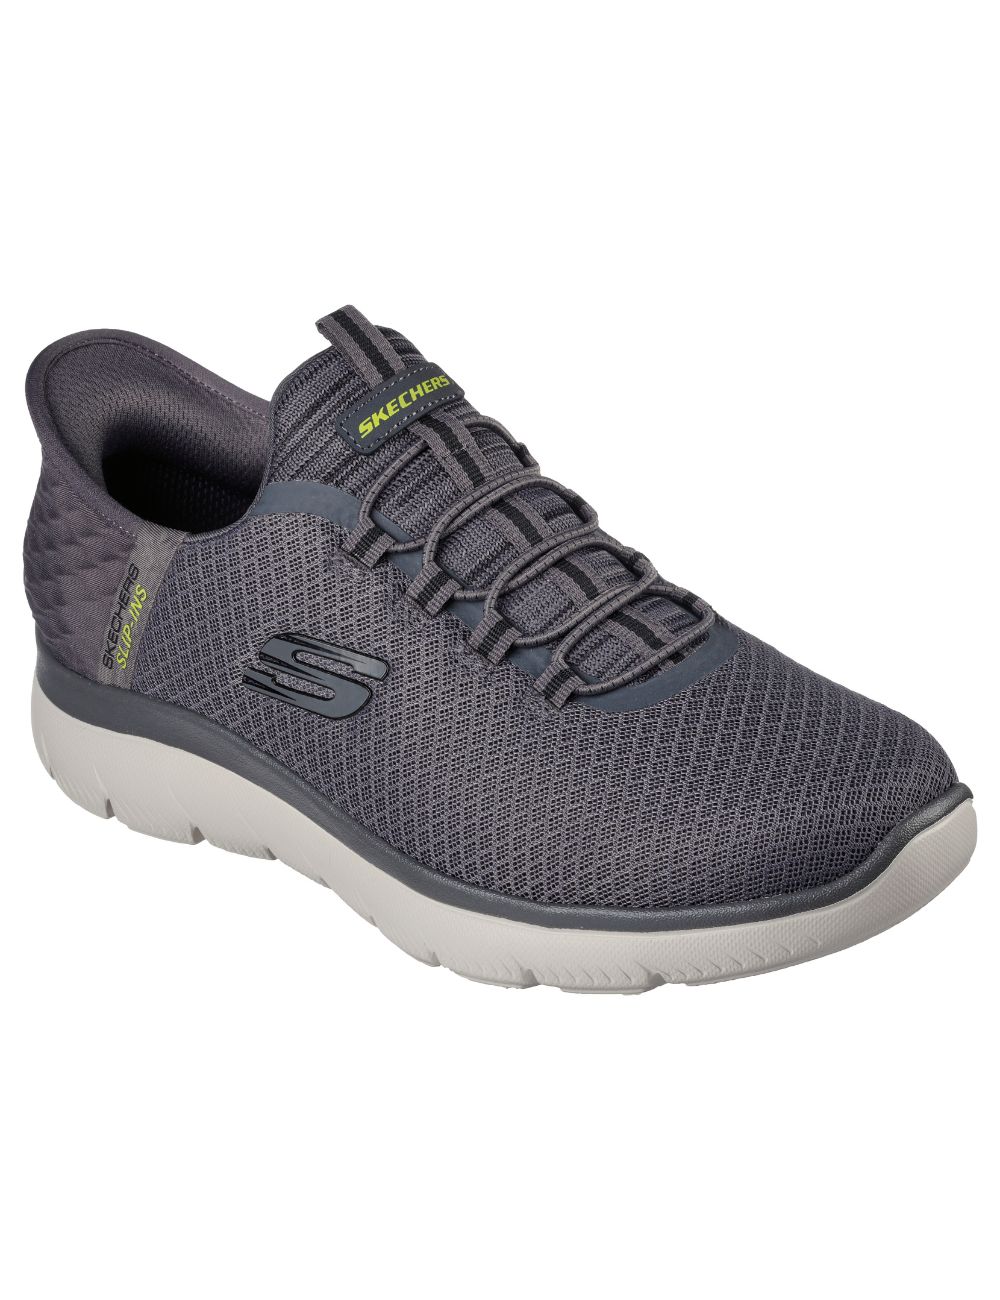 Rouwen Victor Leer Men's Skechers Slip-Ins anthracite gray sneakers (232457)